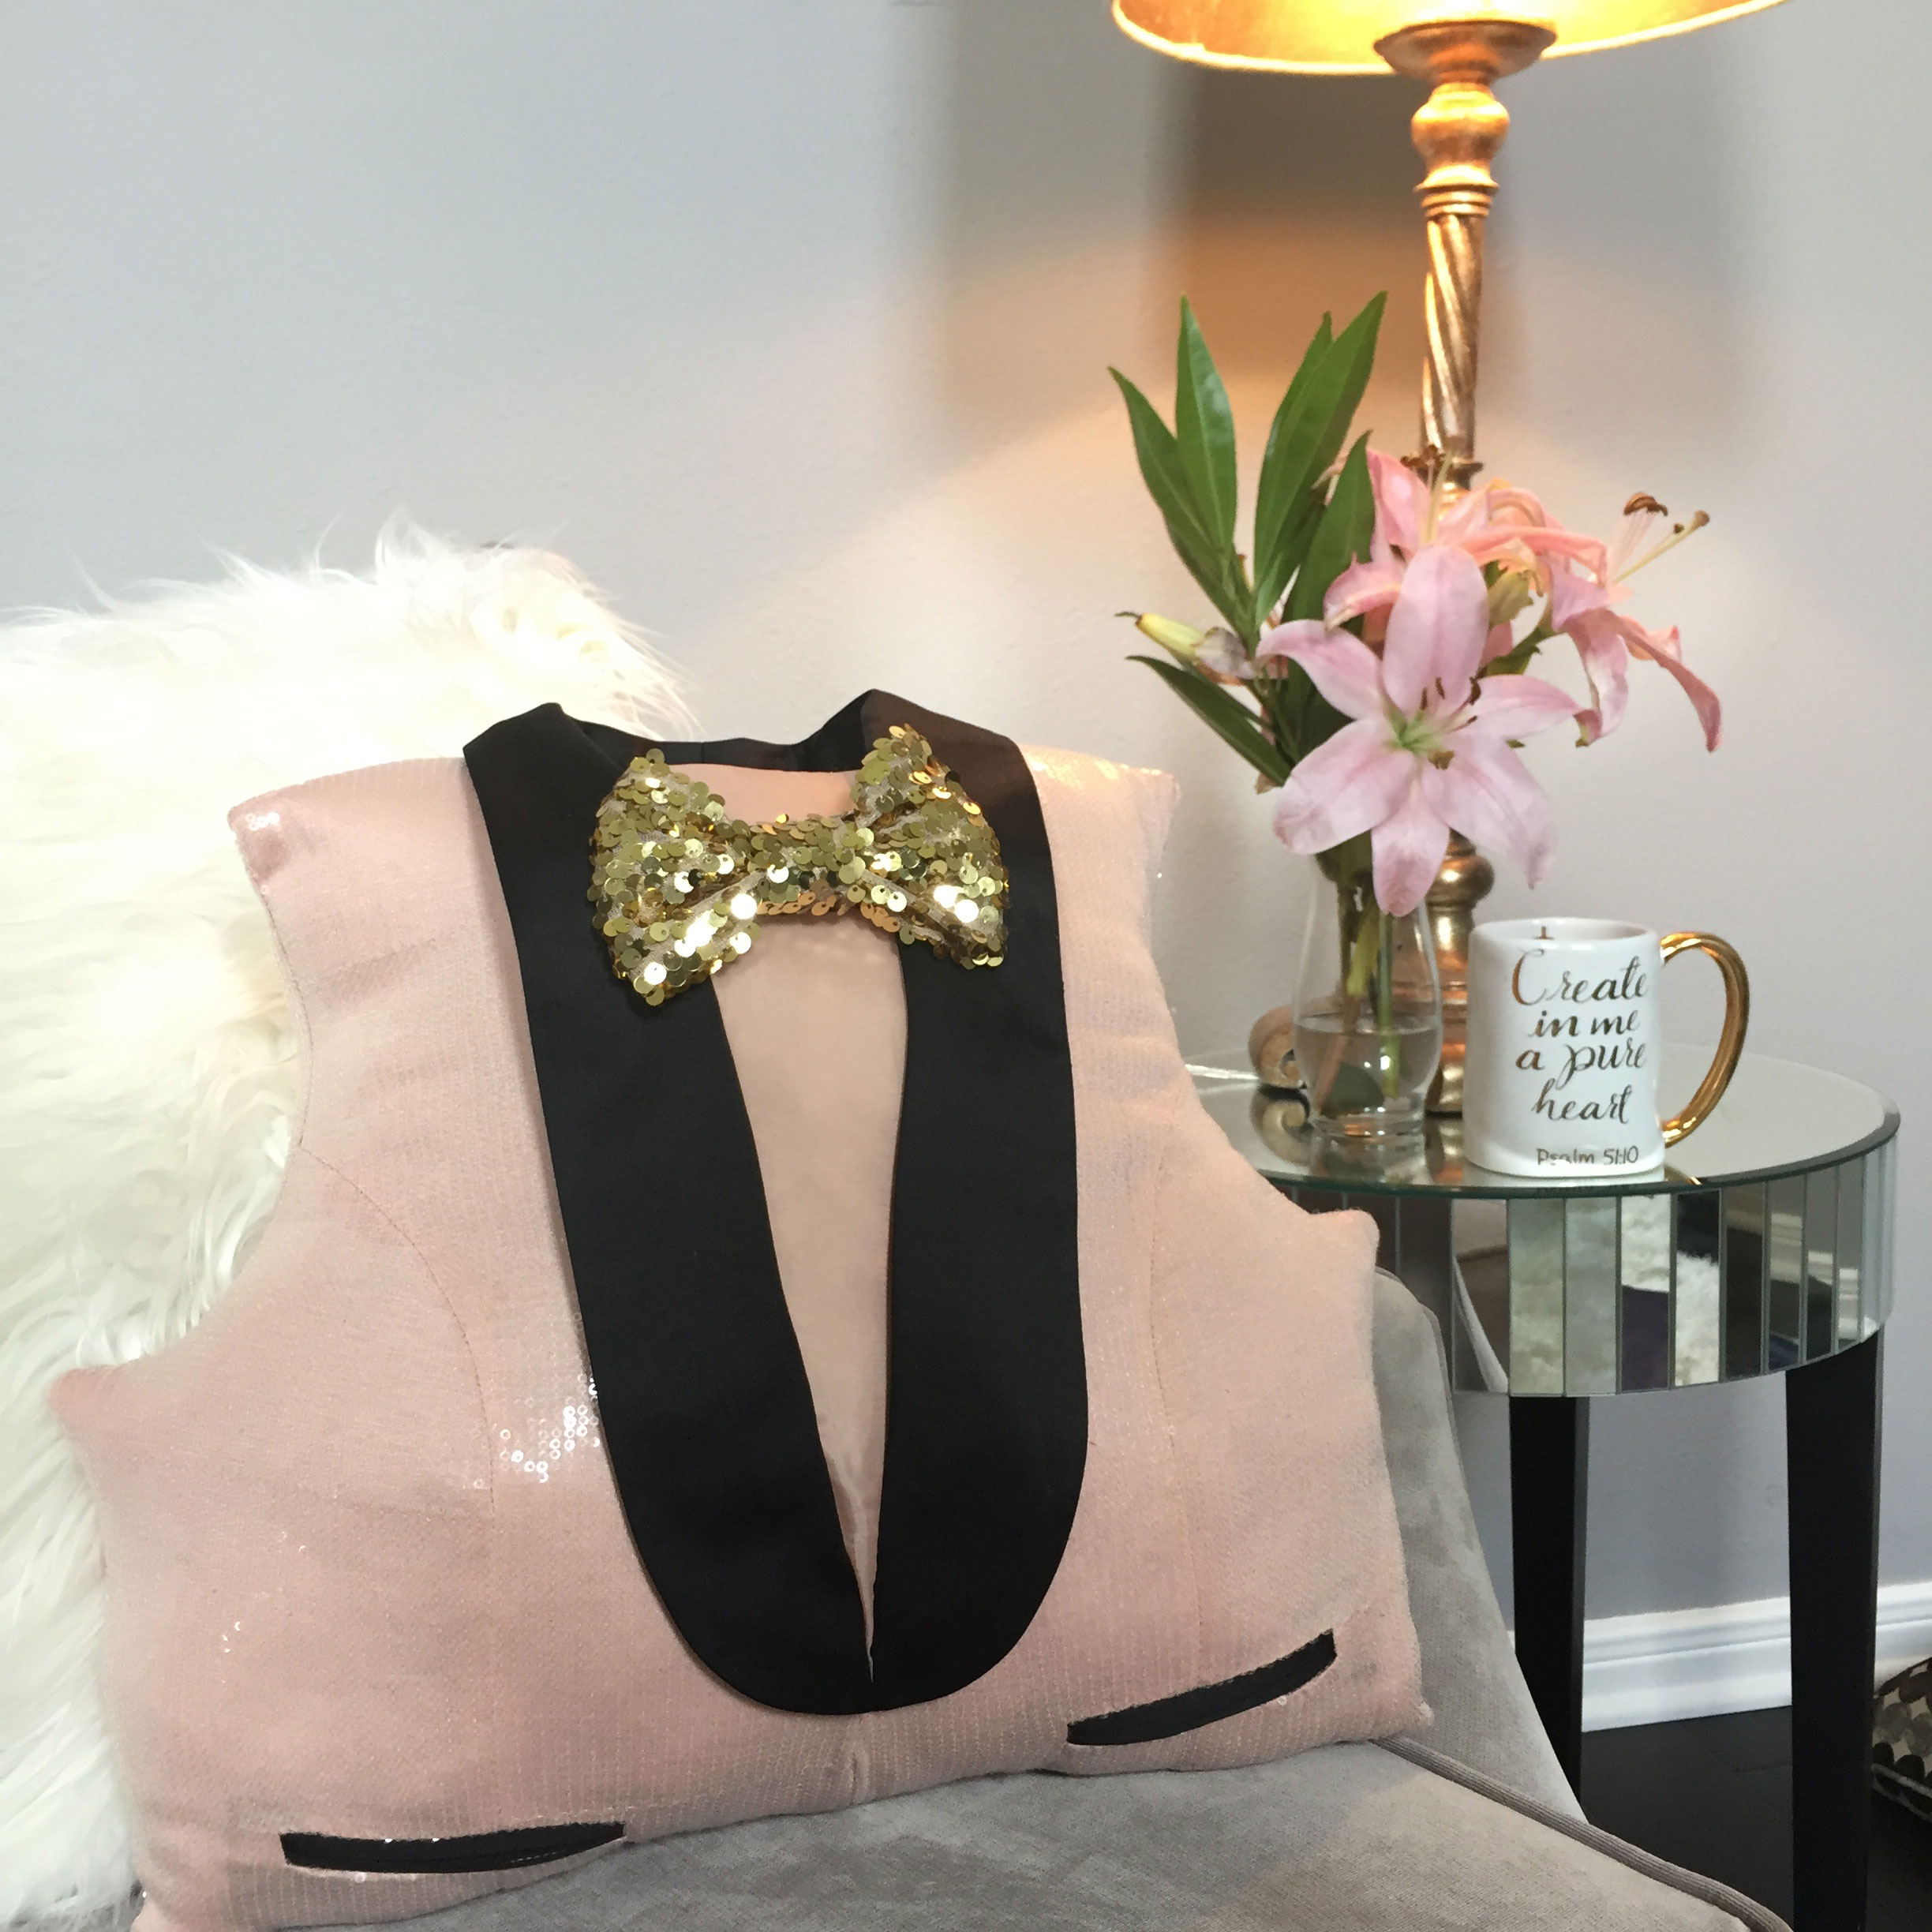 DIY Tuxedo Sequin Pillow #homedecor #budgethomedecor on angelaeast.com